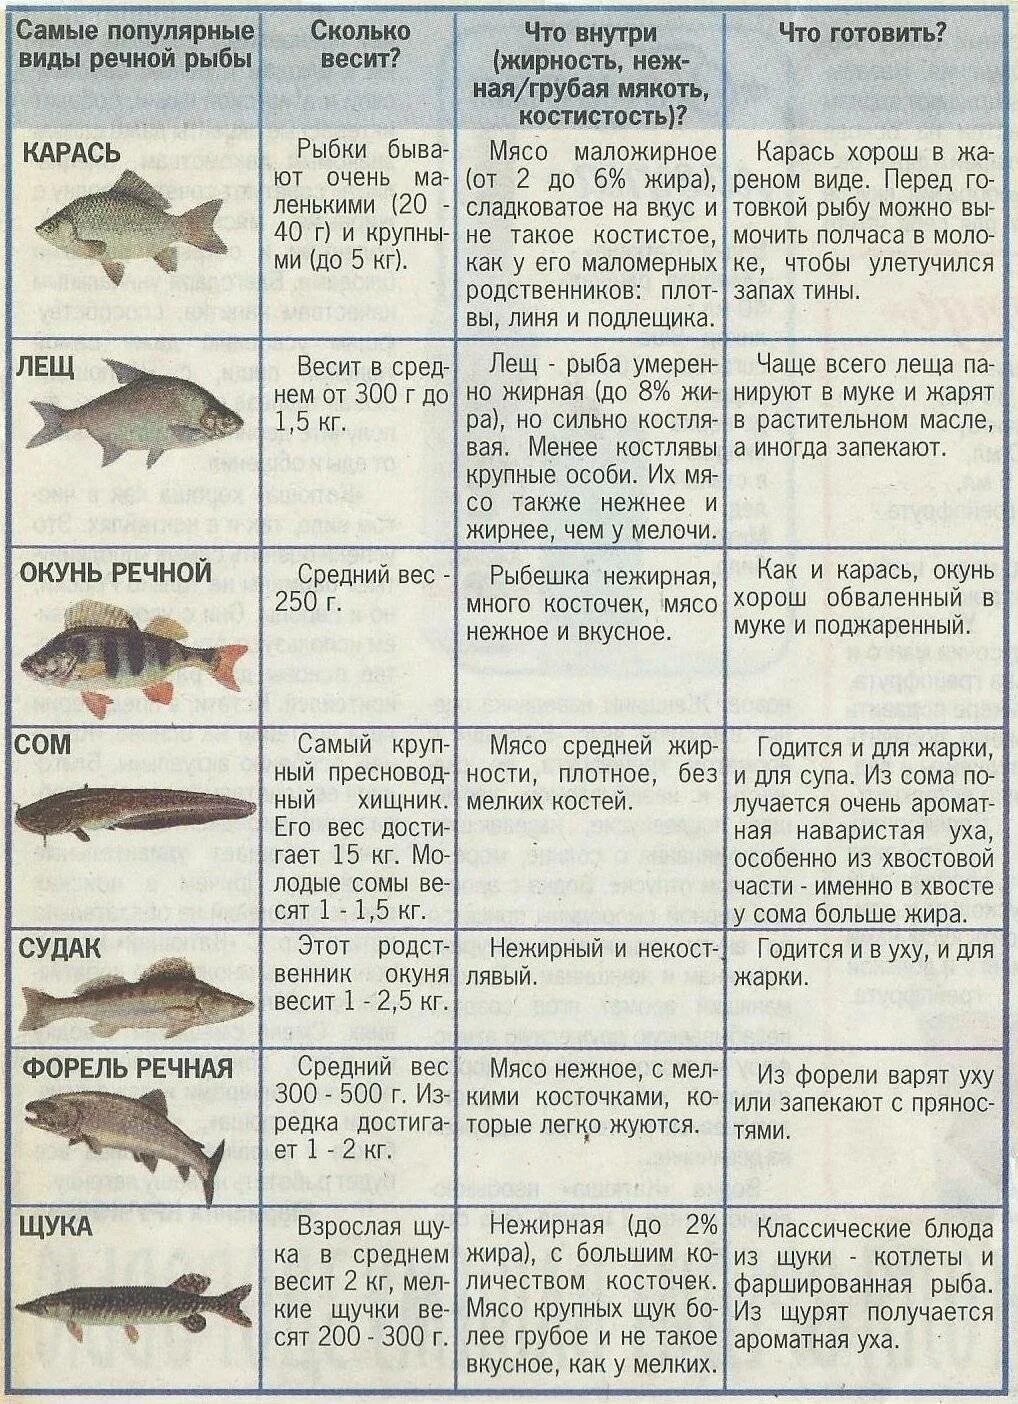 Не жирные сориютв рыбы. Нежирные сорта рыбы. Полезная нежирная рыба. Нежирные сорта рыбы список.